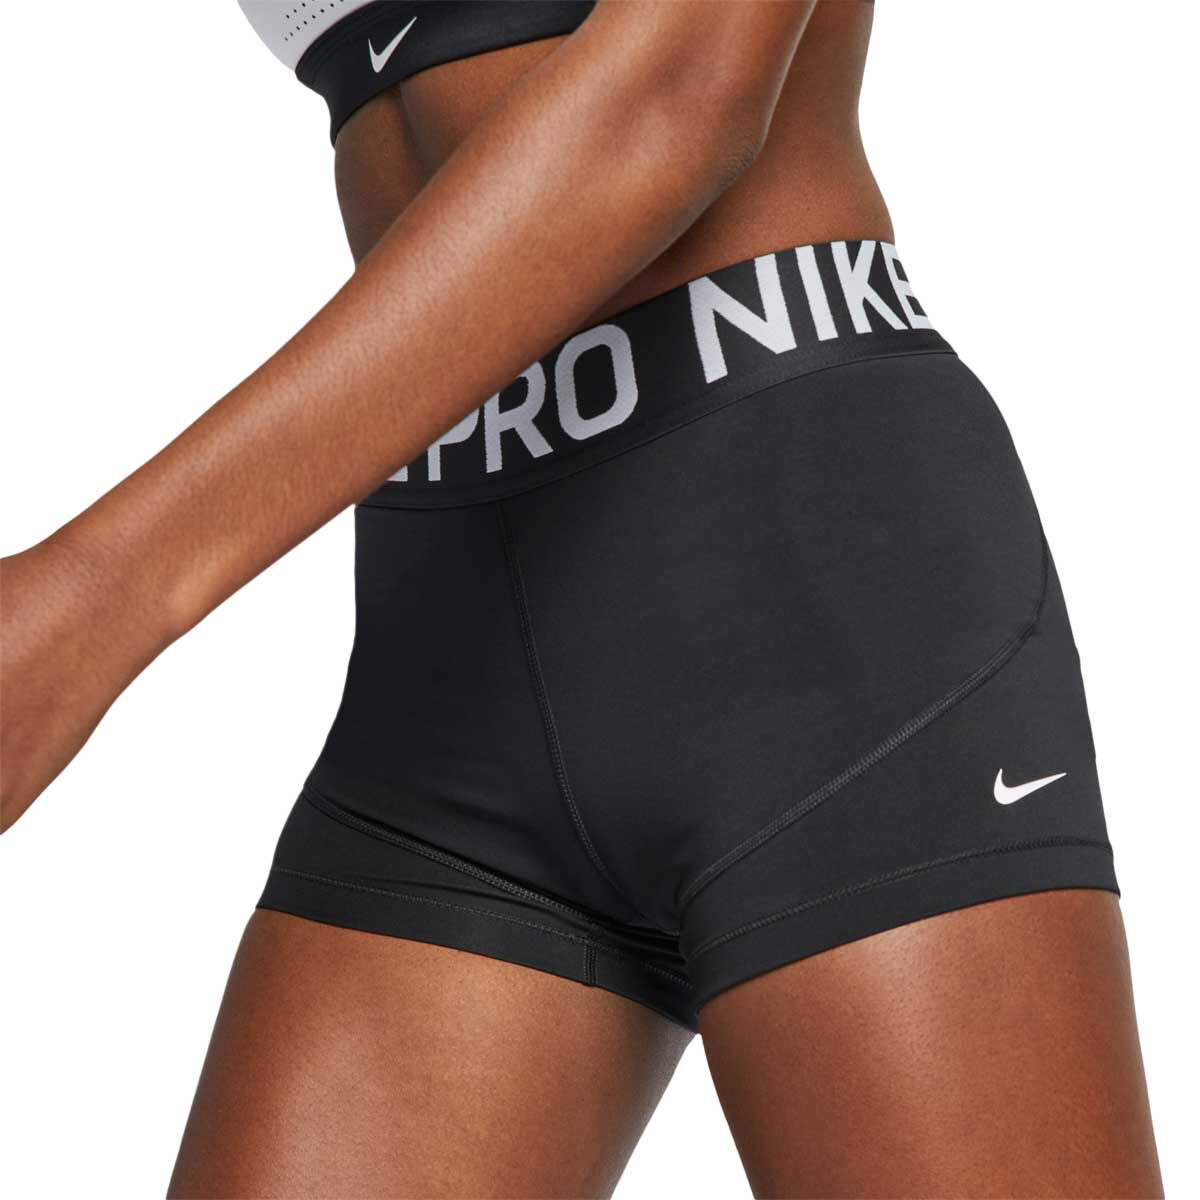 nike pro shorts lengths